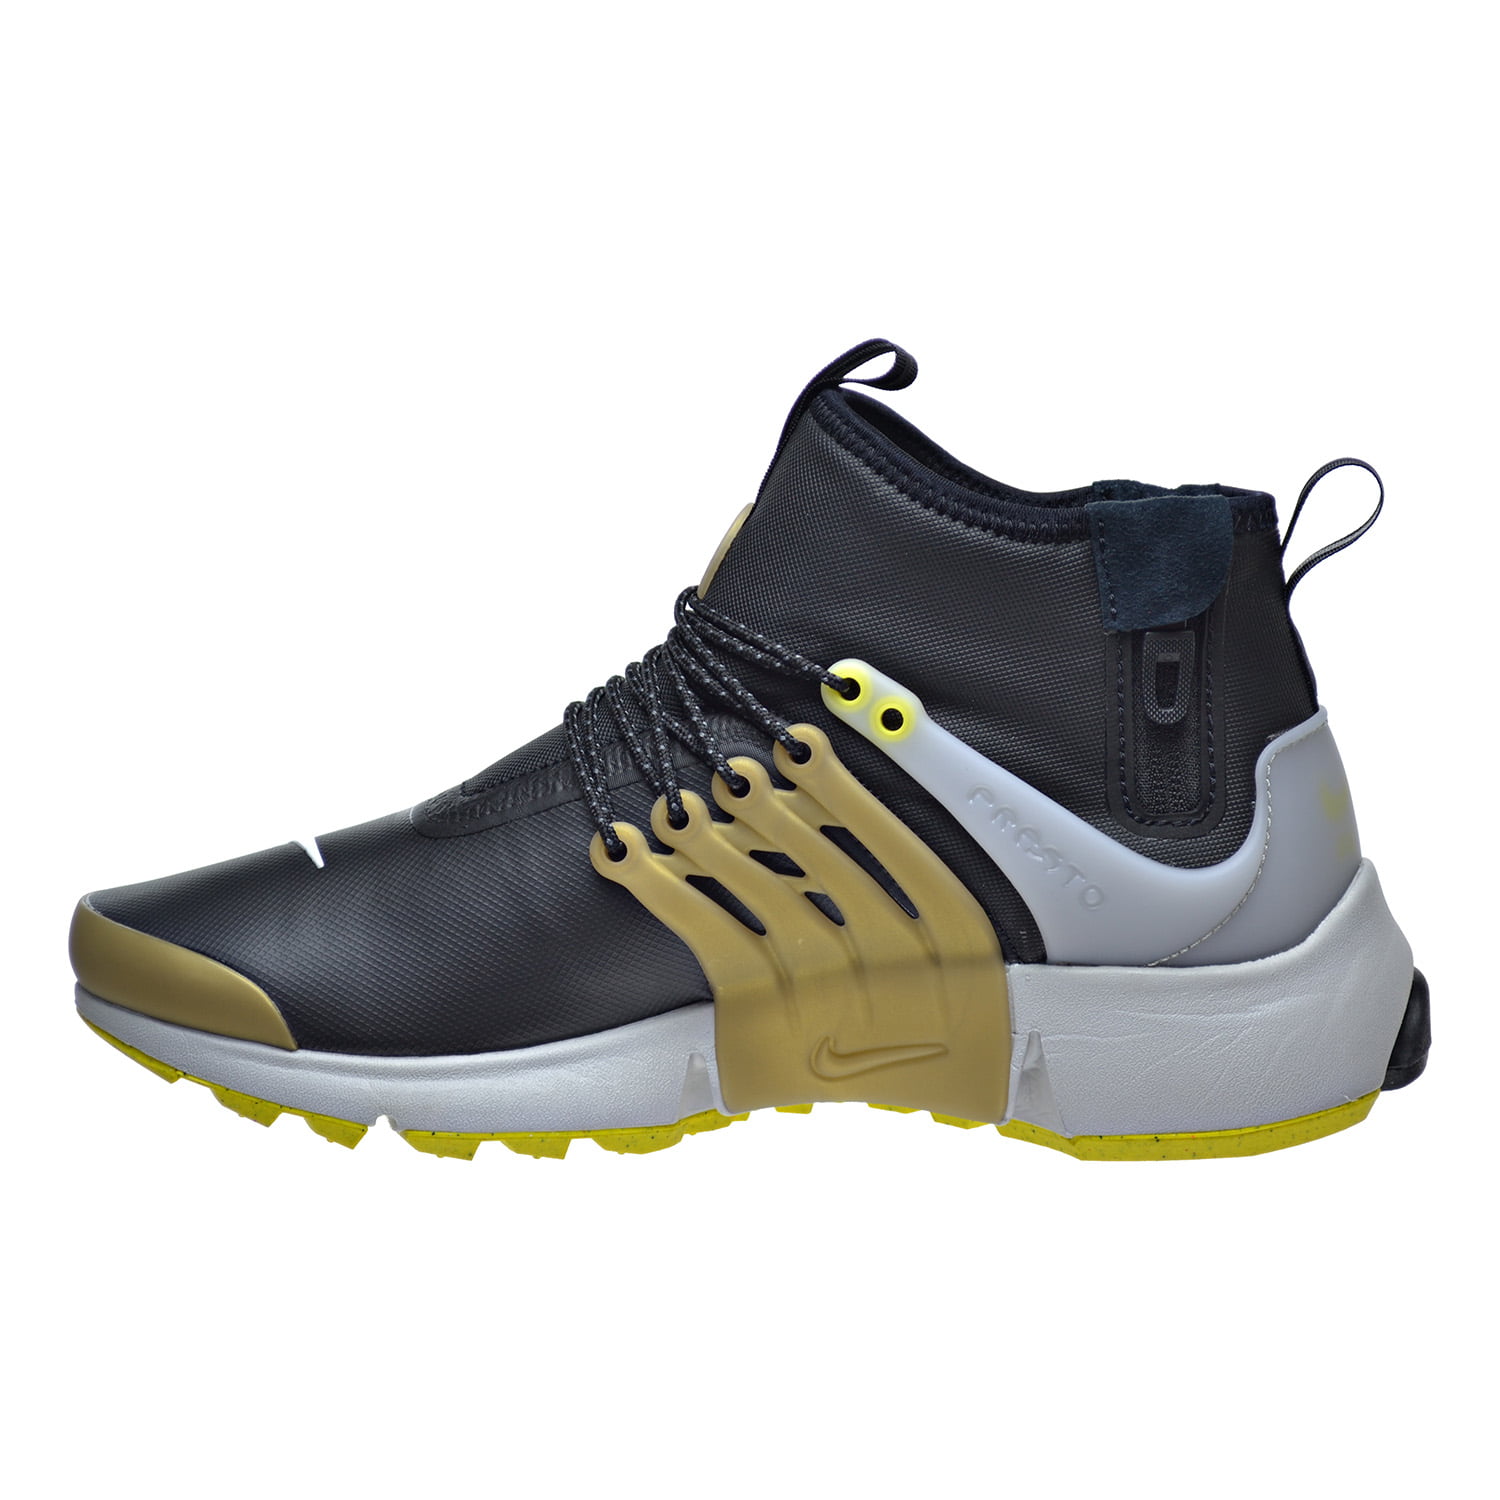 Nike Air Presto Mid Utility Shoes Black/Metallic Gold/Neutral Grey/Yellow Streak 859524-002 -